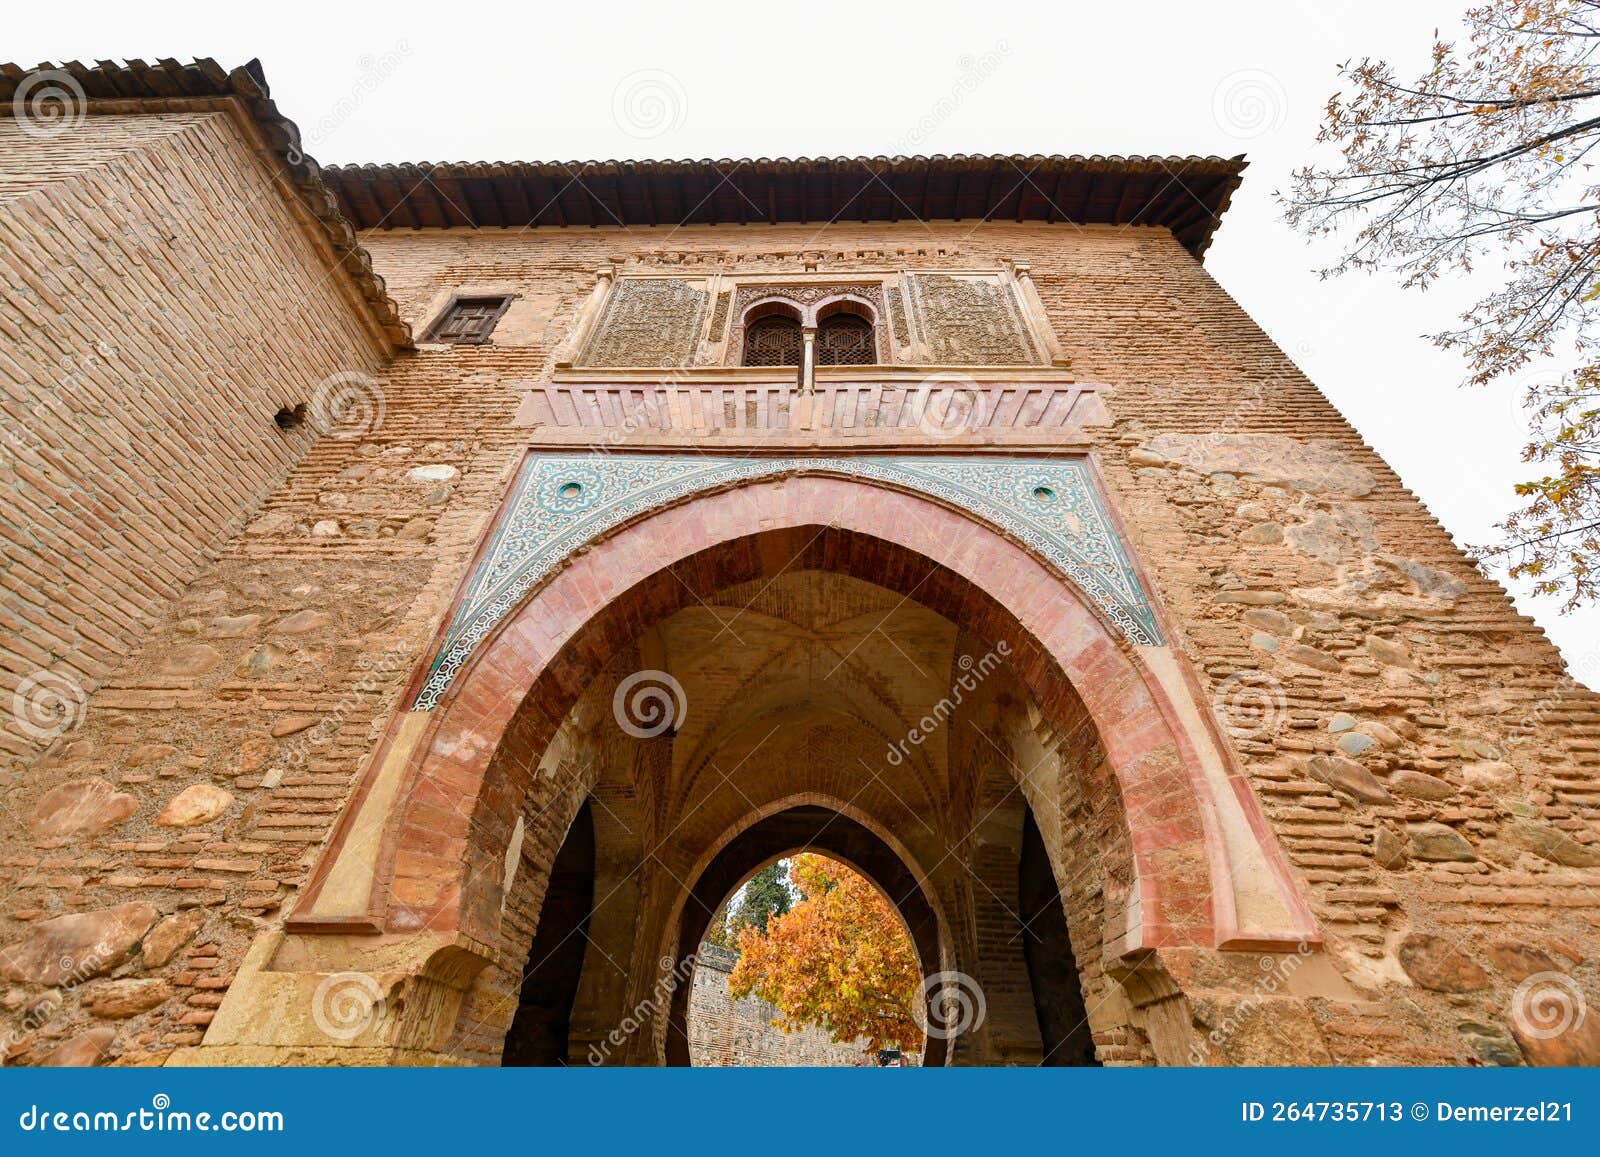 door of wine - alhambra, granada, spain